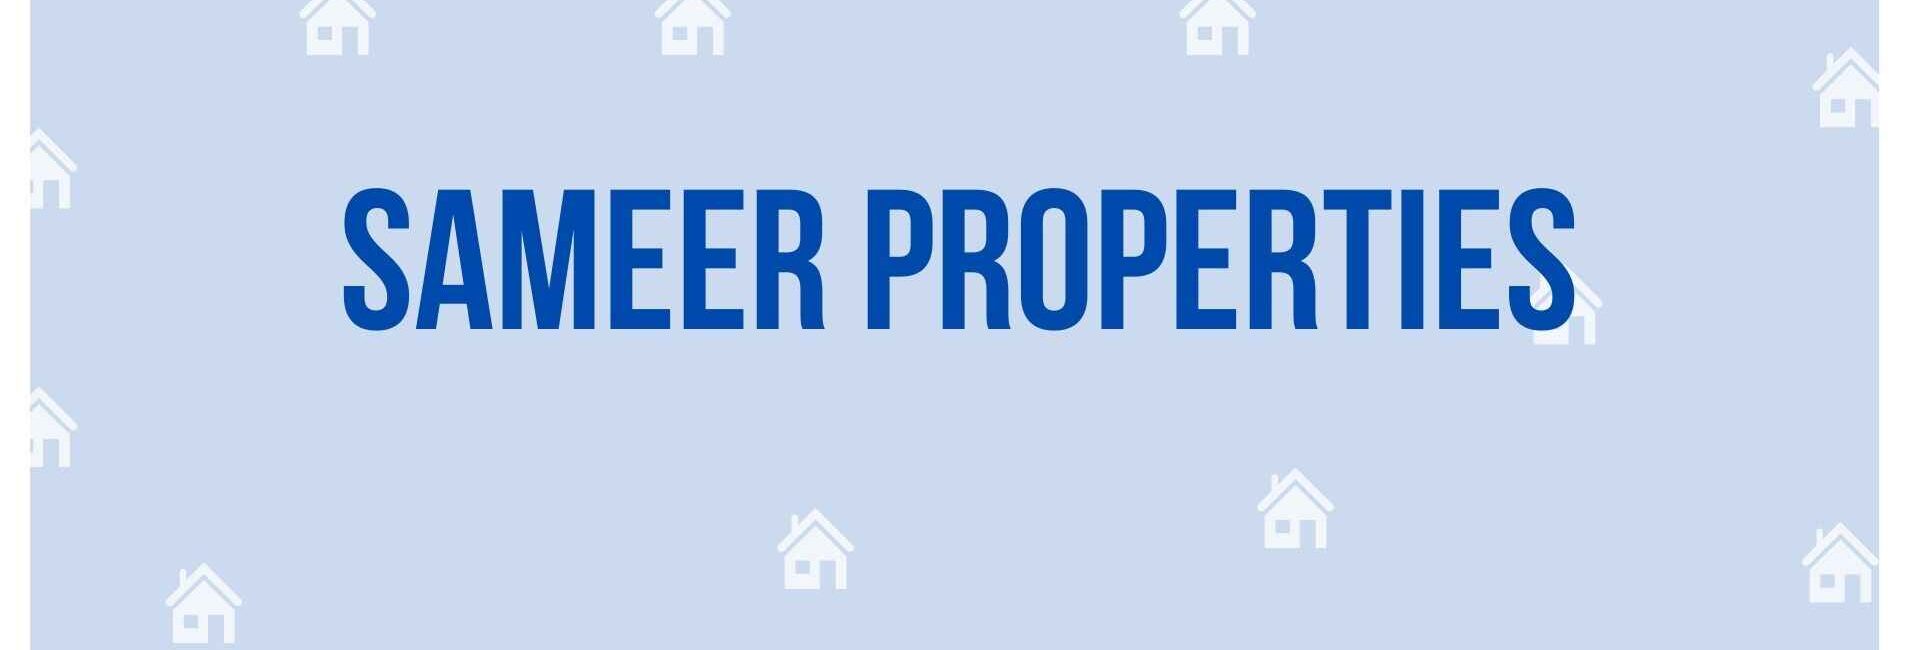 Sameer Properties - Property Dealer in Noida